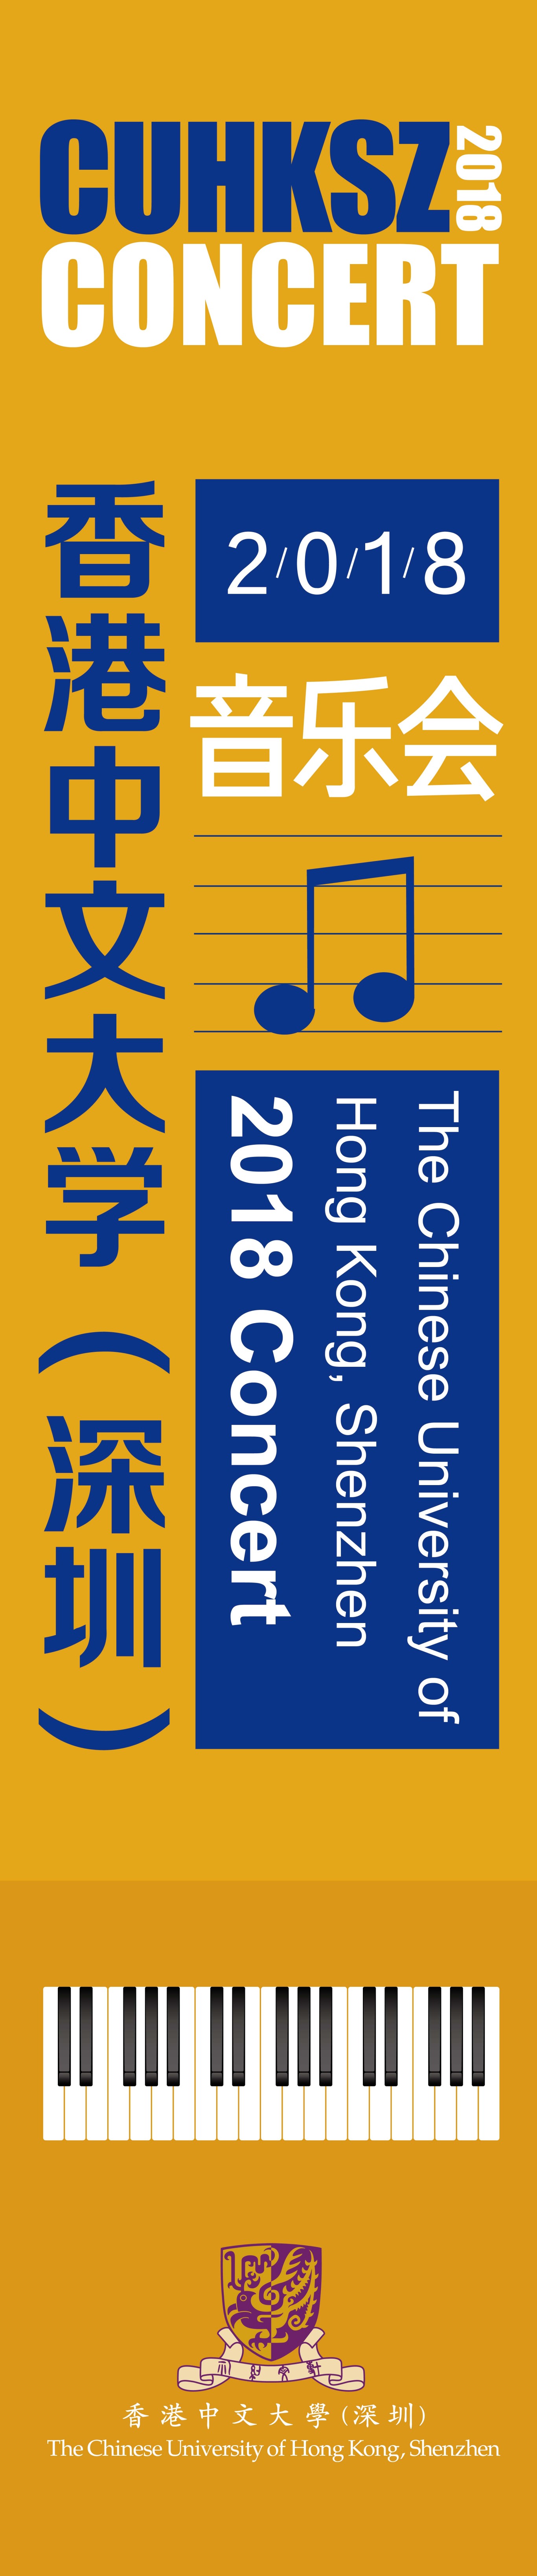 香港中文大学（深圳）2018音乐会主视觉&手册设计图0